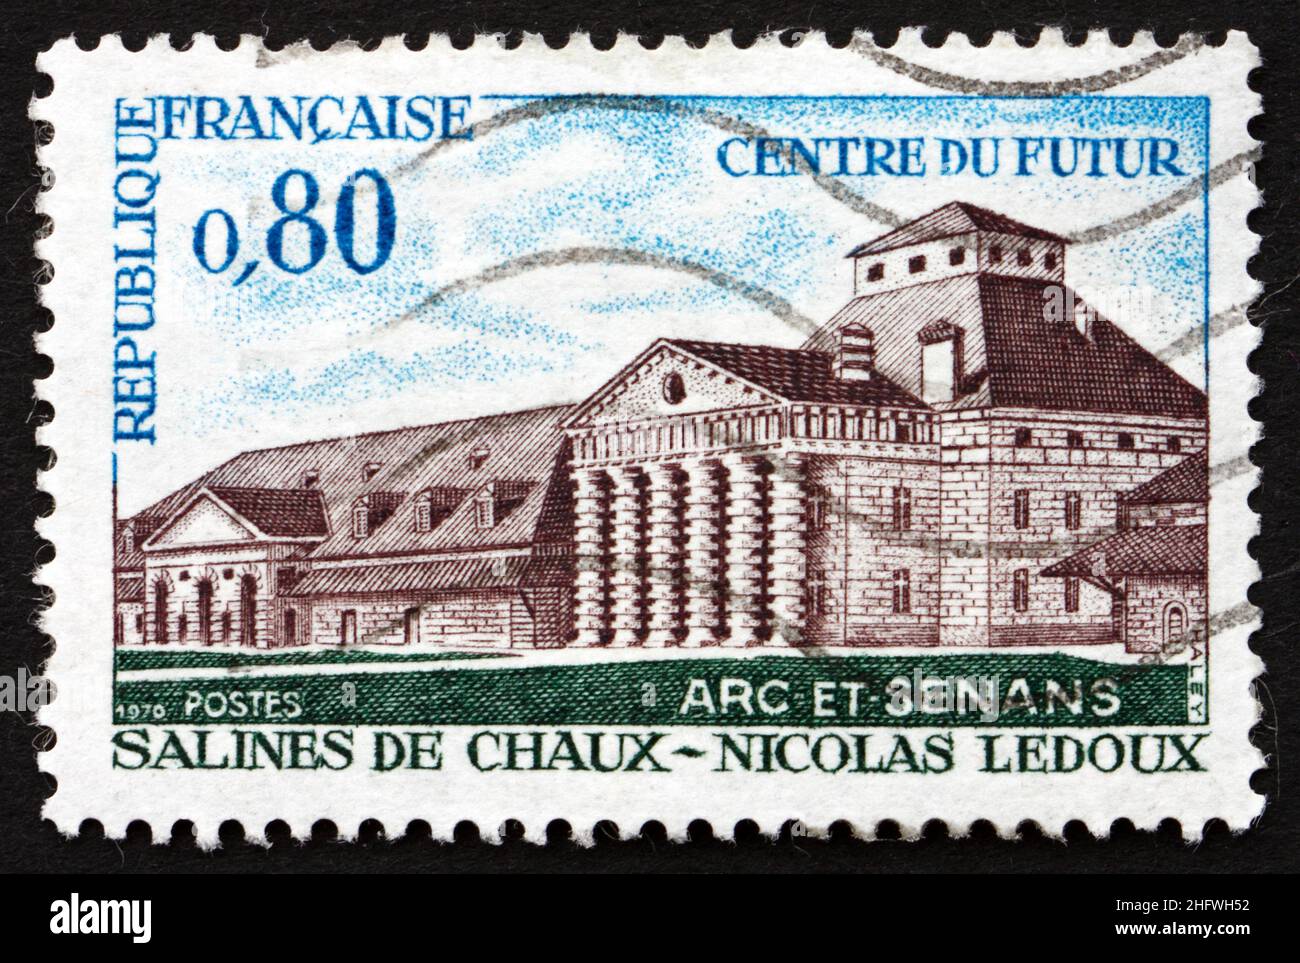 FRANCE - VERS 1970 : un timbre imprimé en France montre les oeuvres royales de sel, Arc-et-Senas, la restauration des bâtiments du 18th siècle, par Claude Nicolas Banque D'Images